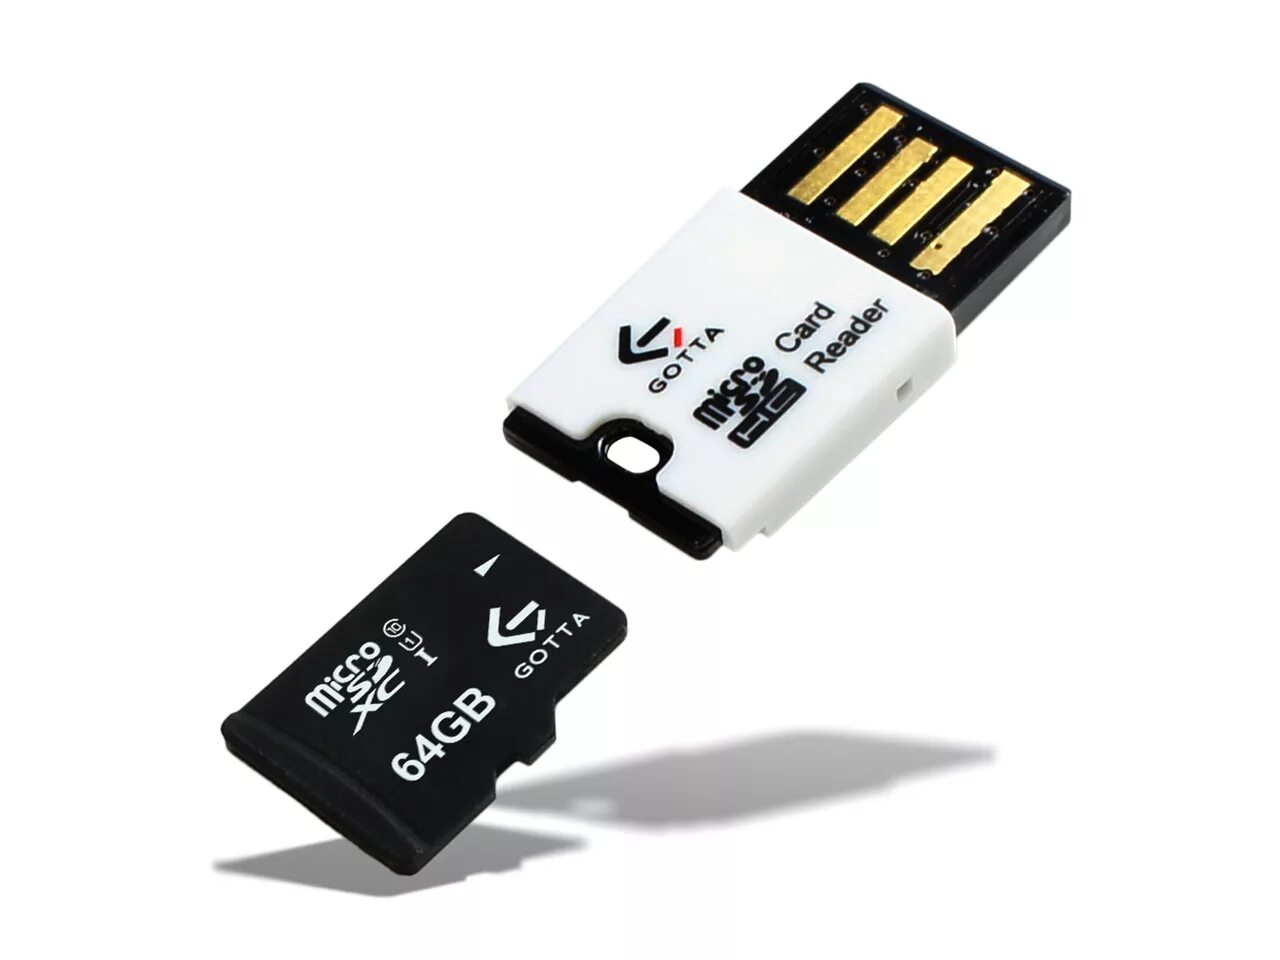 SD Card адаптер MICROSD. MICROSD на SD USB адаптер. Картридер для микро SD USB. Card Reader USB SD Card MICROSD. Музыка с сд карты